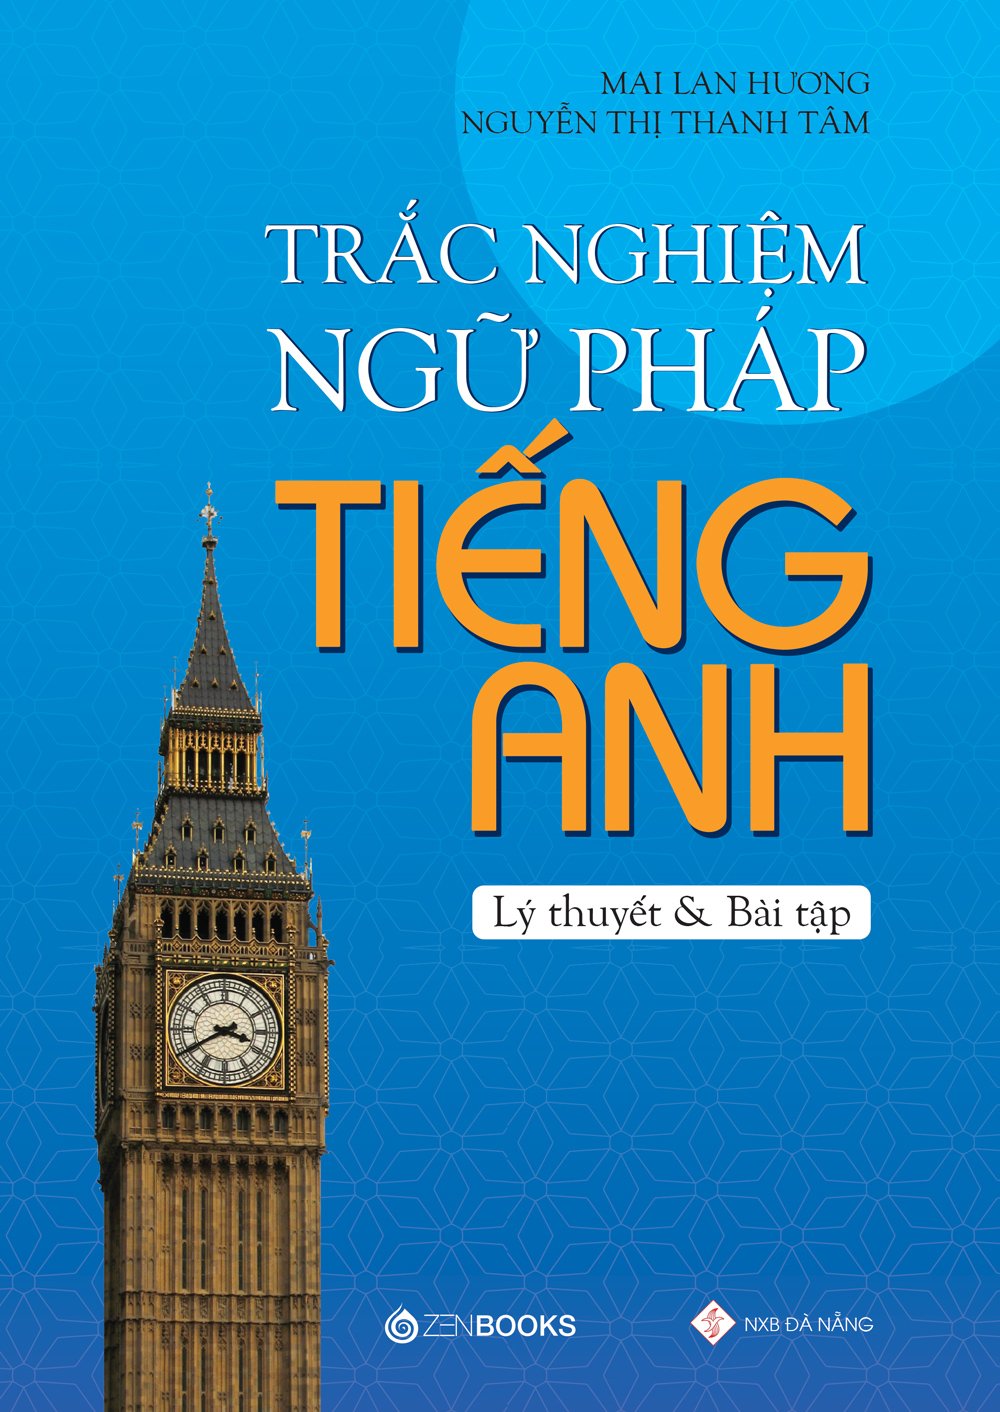 Sách - Combo 2 Cuốn Ngữ Pháp Tiếng Anh Dành Cho Học Sinh Và Trắc Nghiệm Ngữ Pháp Tiếng Anh - Mai Lan Hương